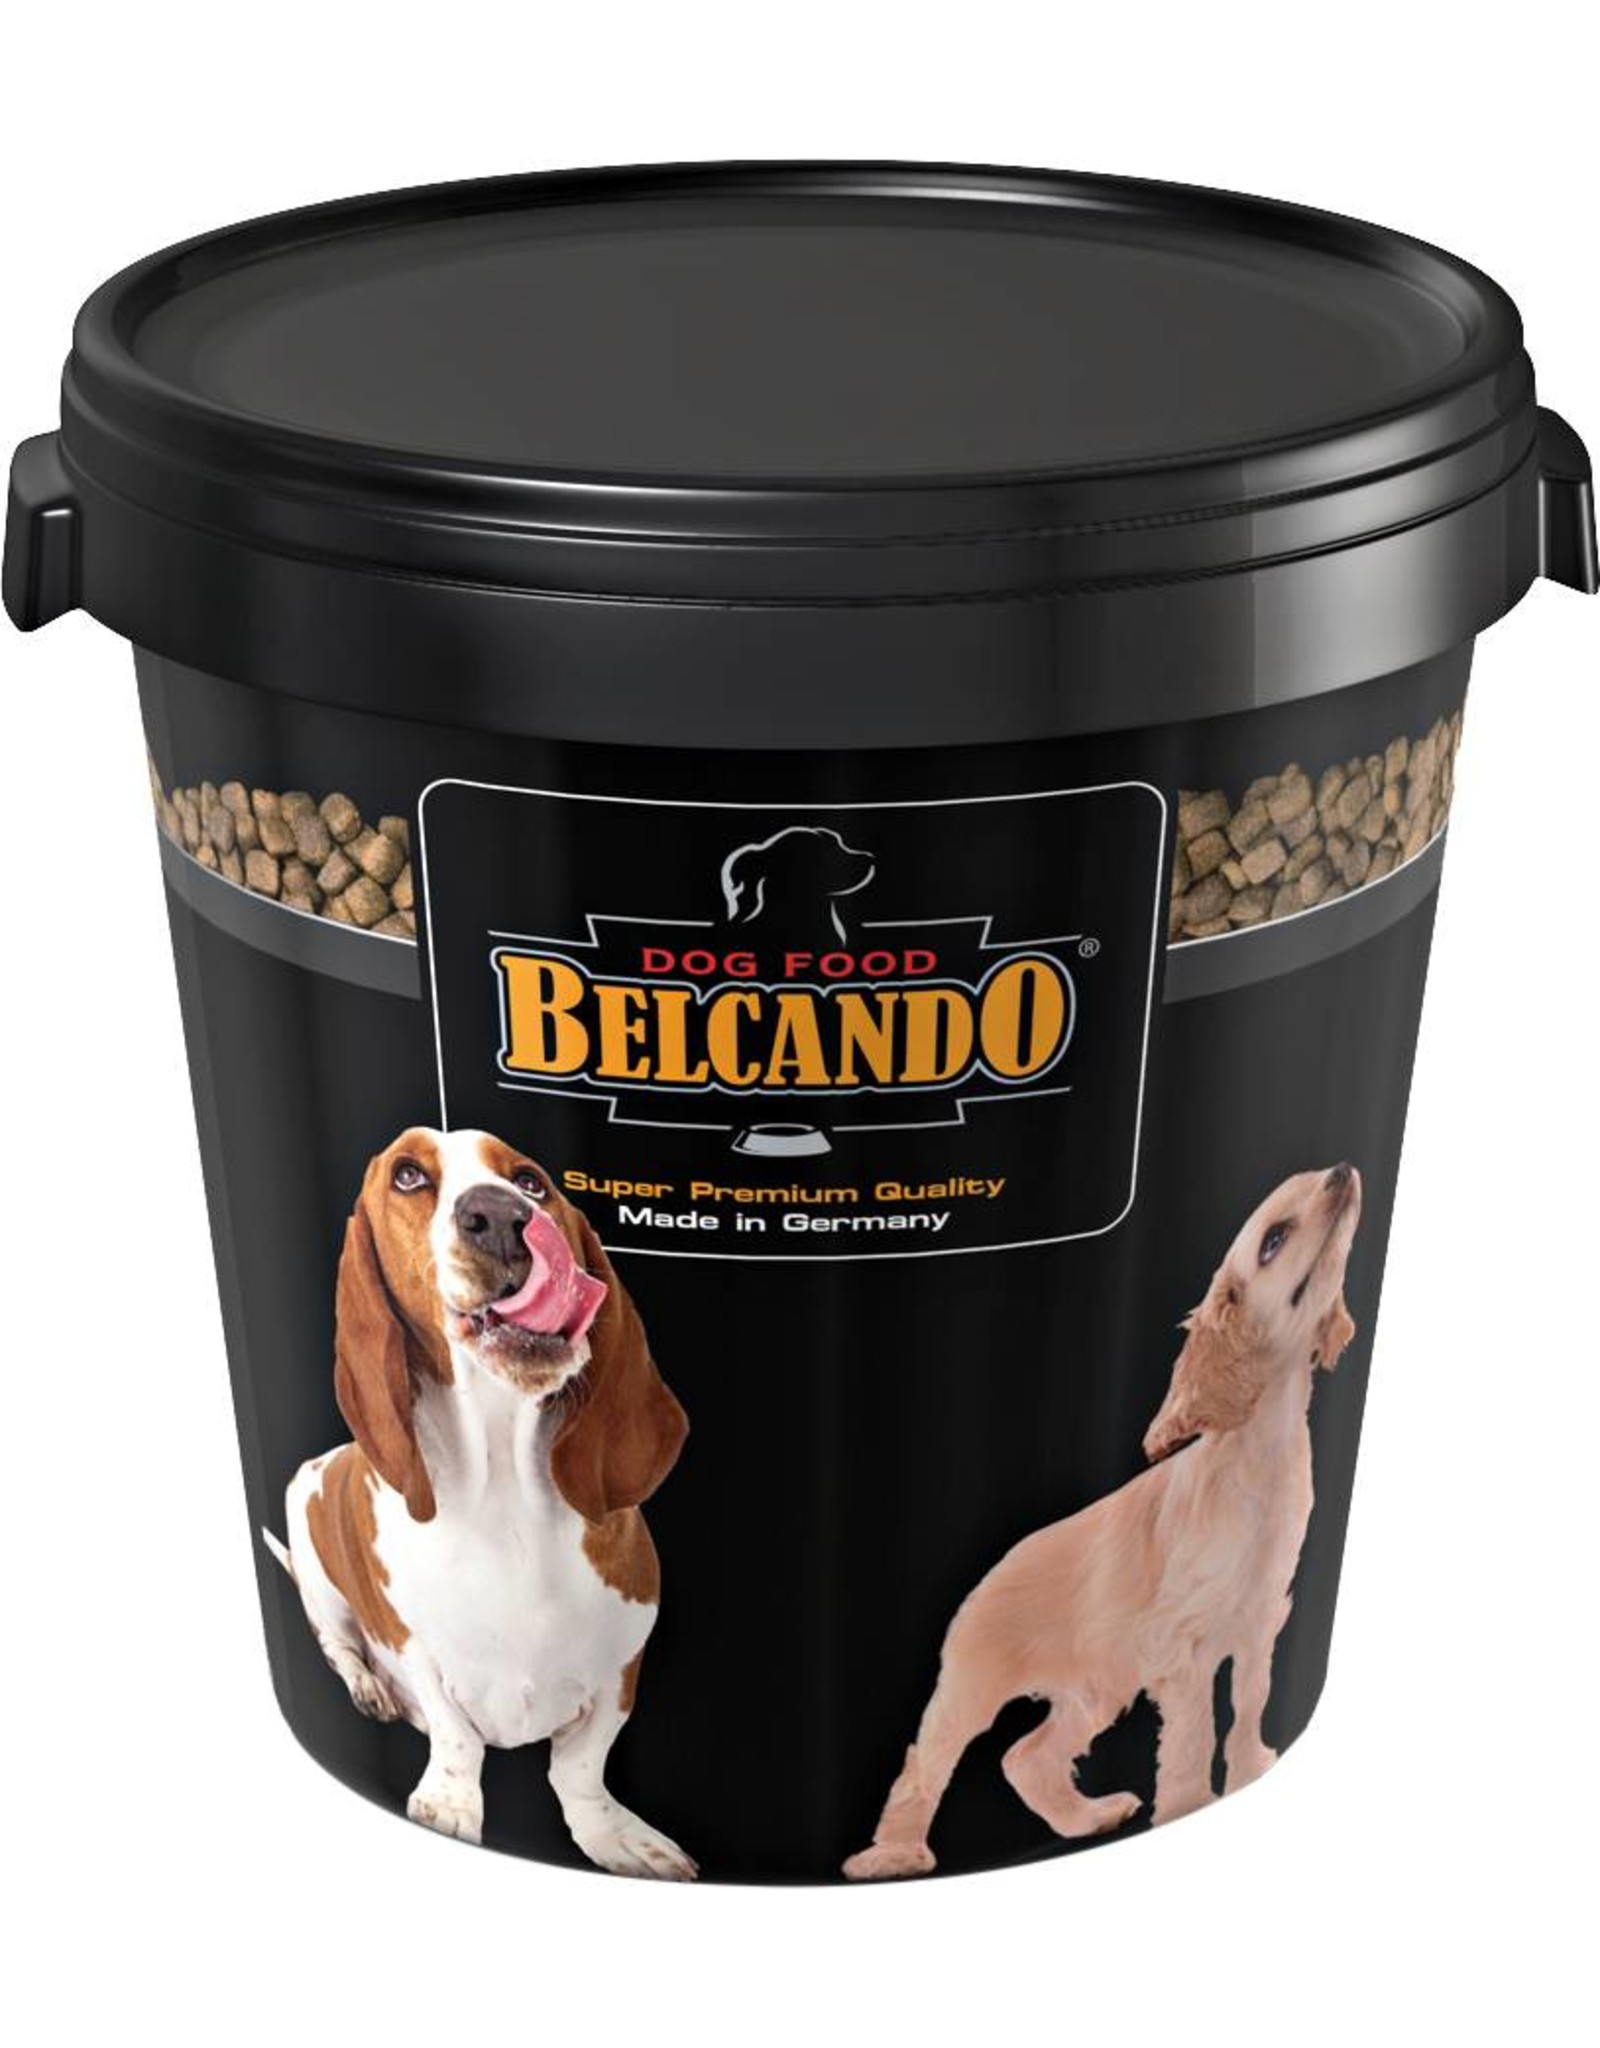 Продажа кормов для собак. Контейнер для сухого корма 12 кг. Belcando. Belcando корм. Контейнер для сухого корма Pro Plan.